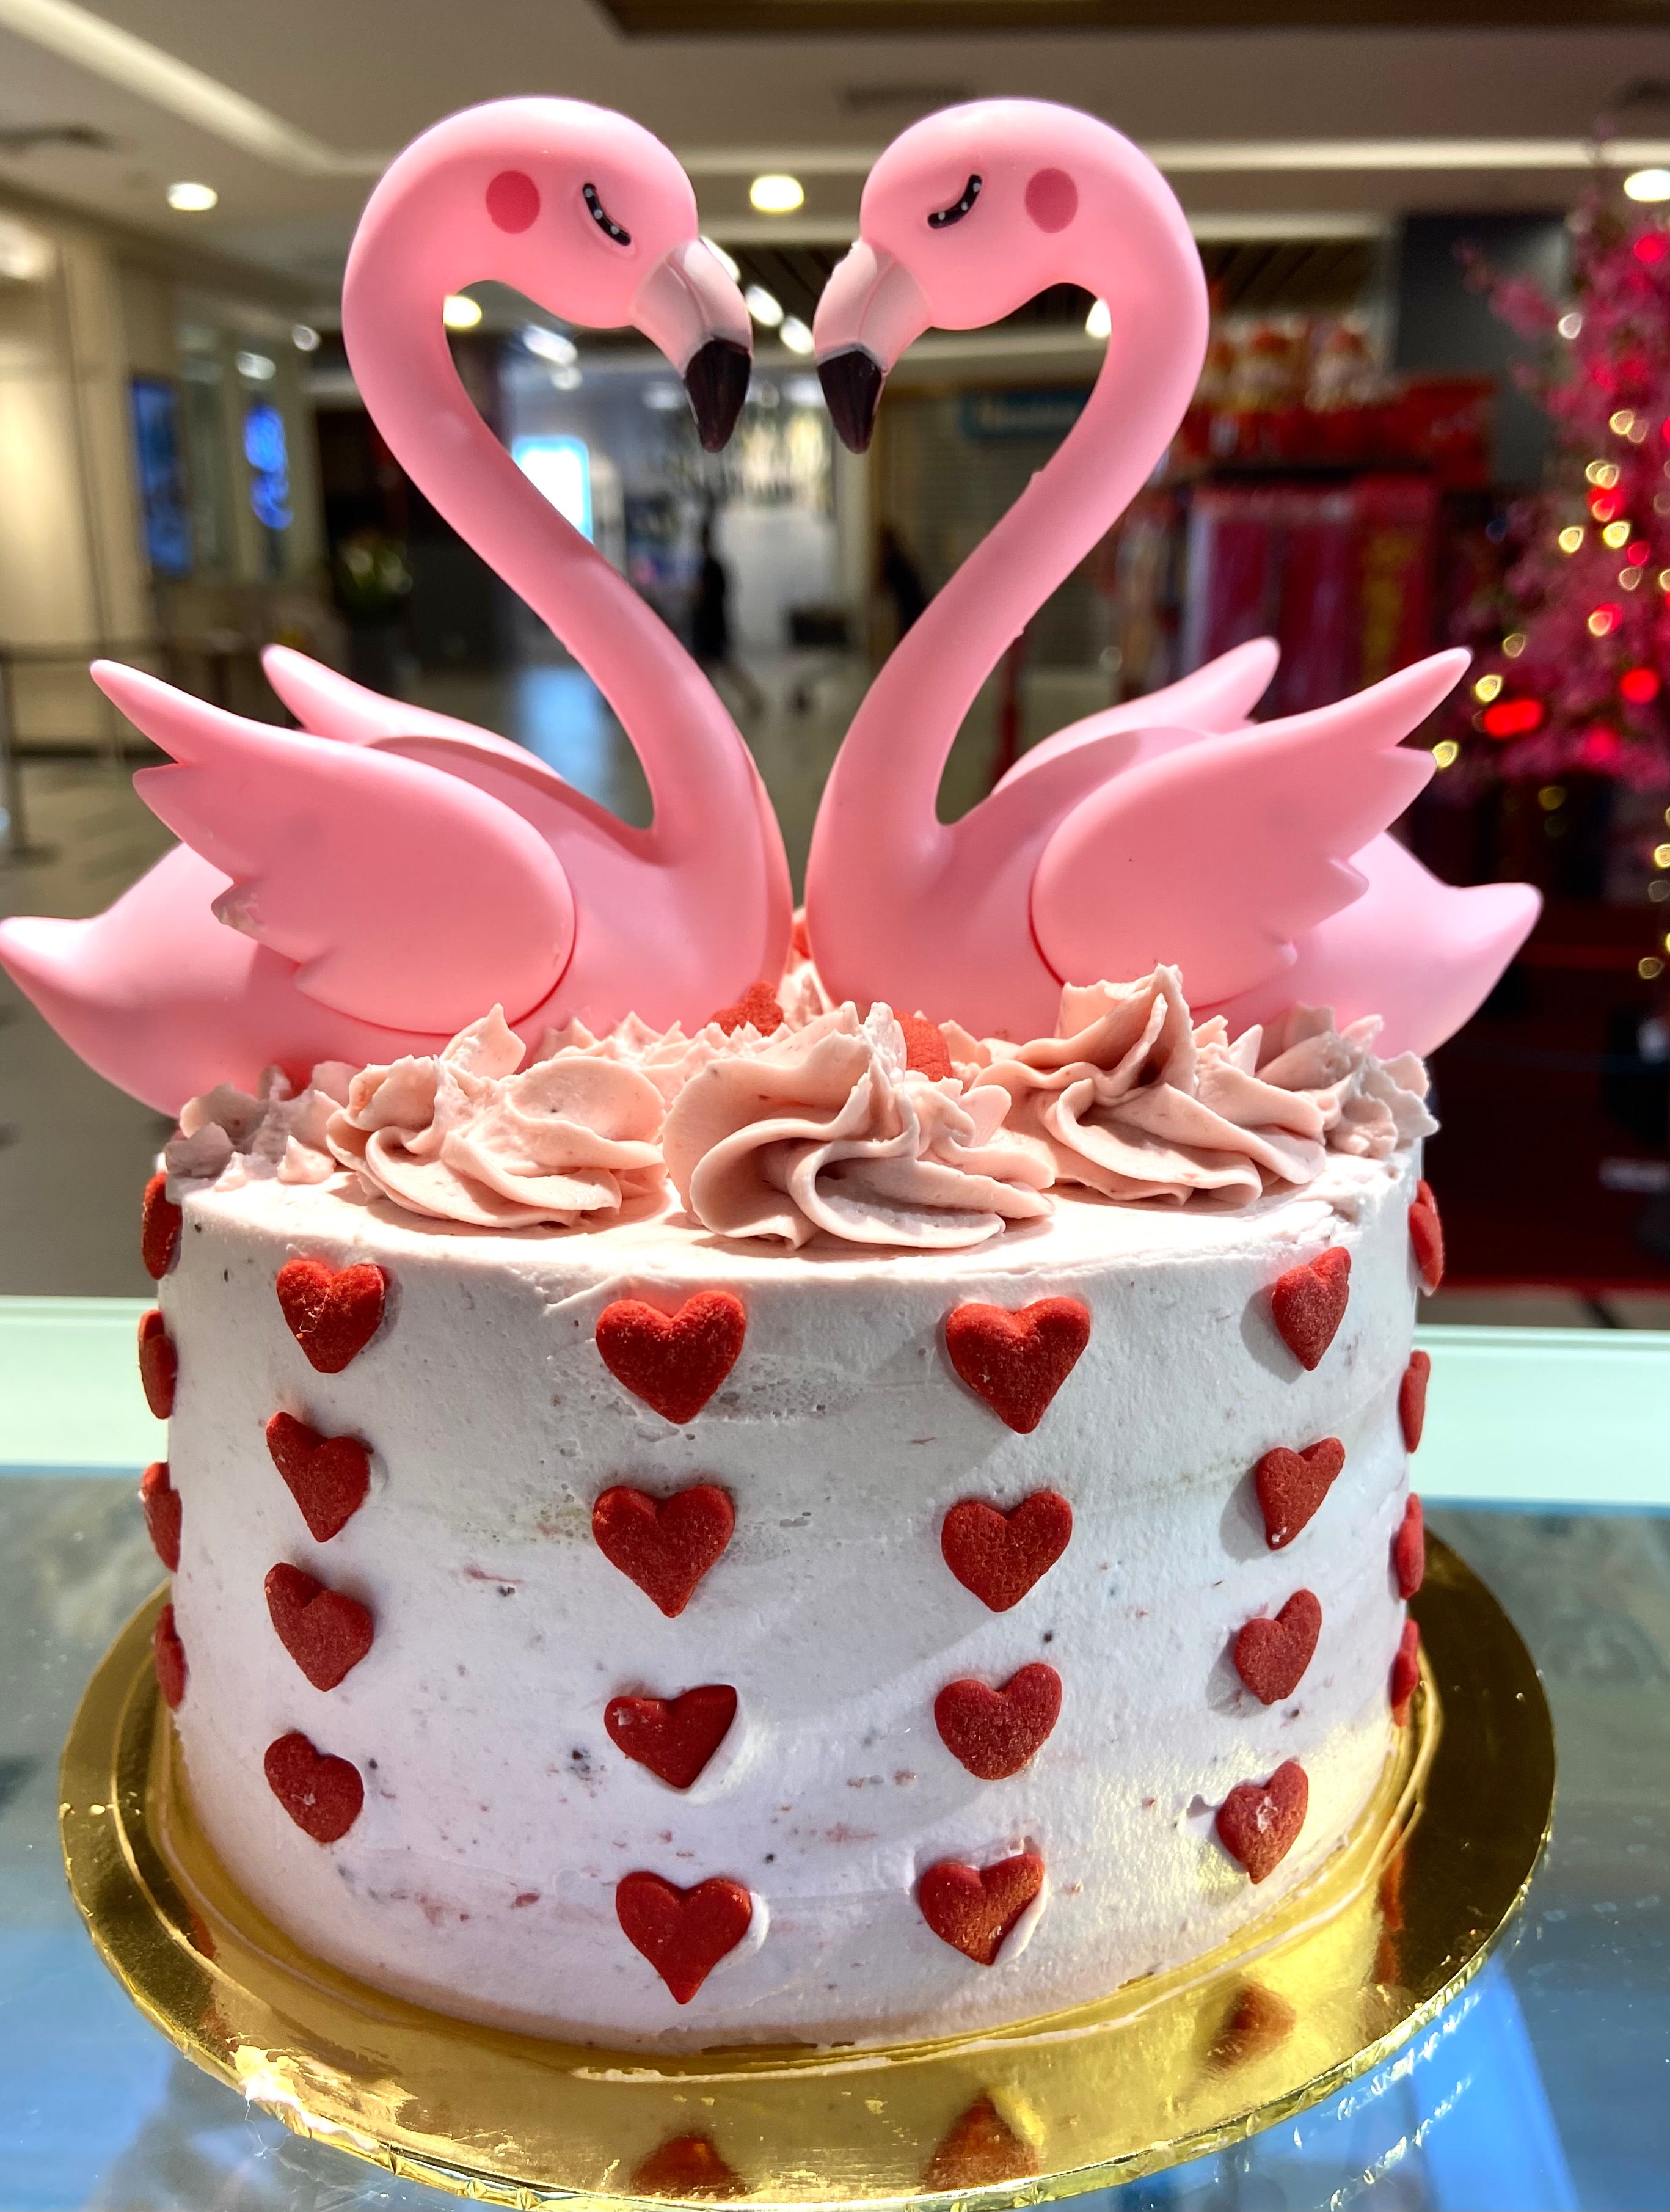 Vegan giant pink swan cake, gluten-free